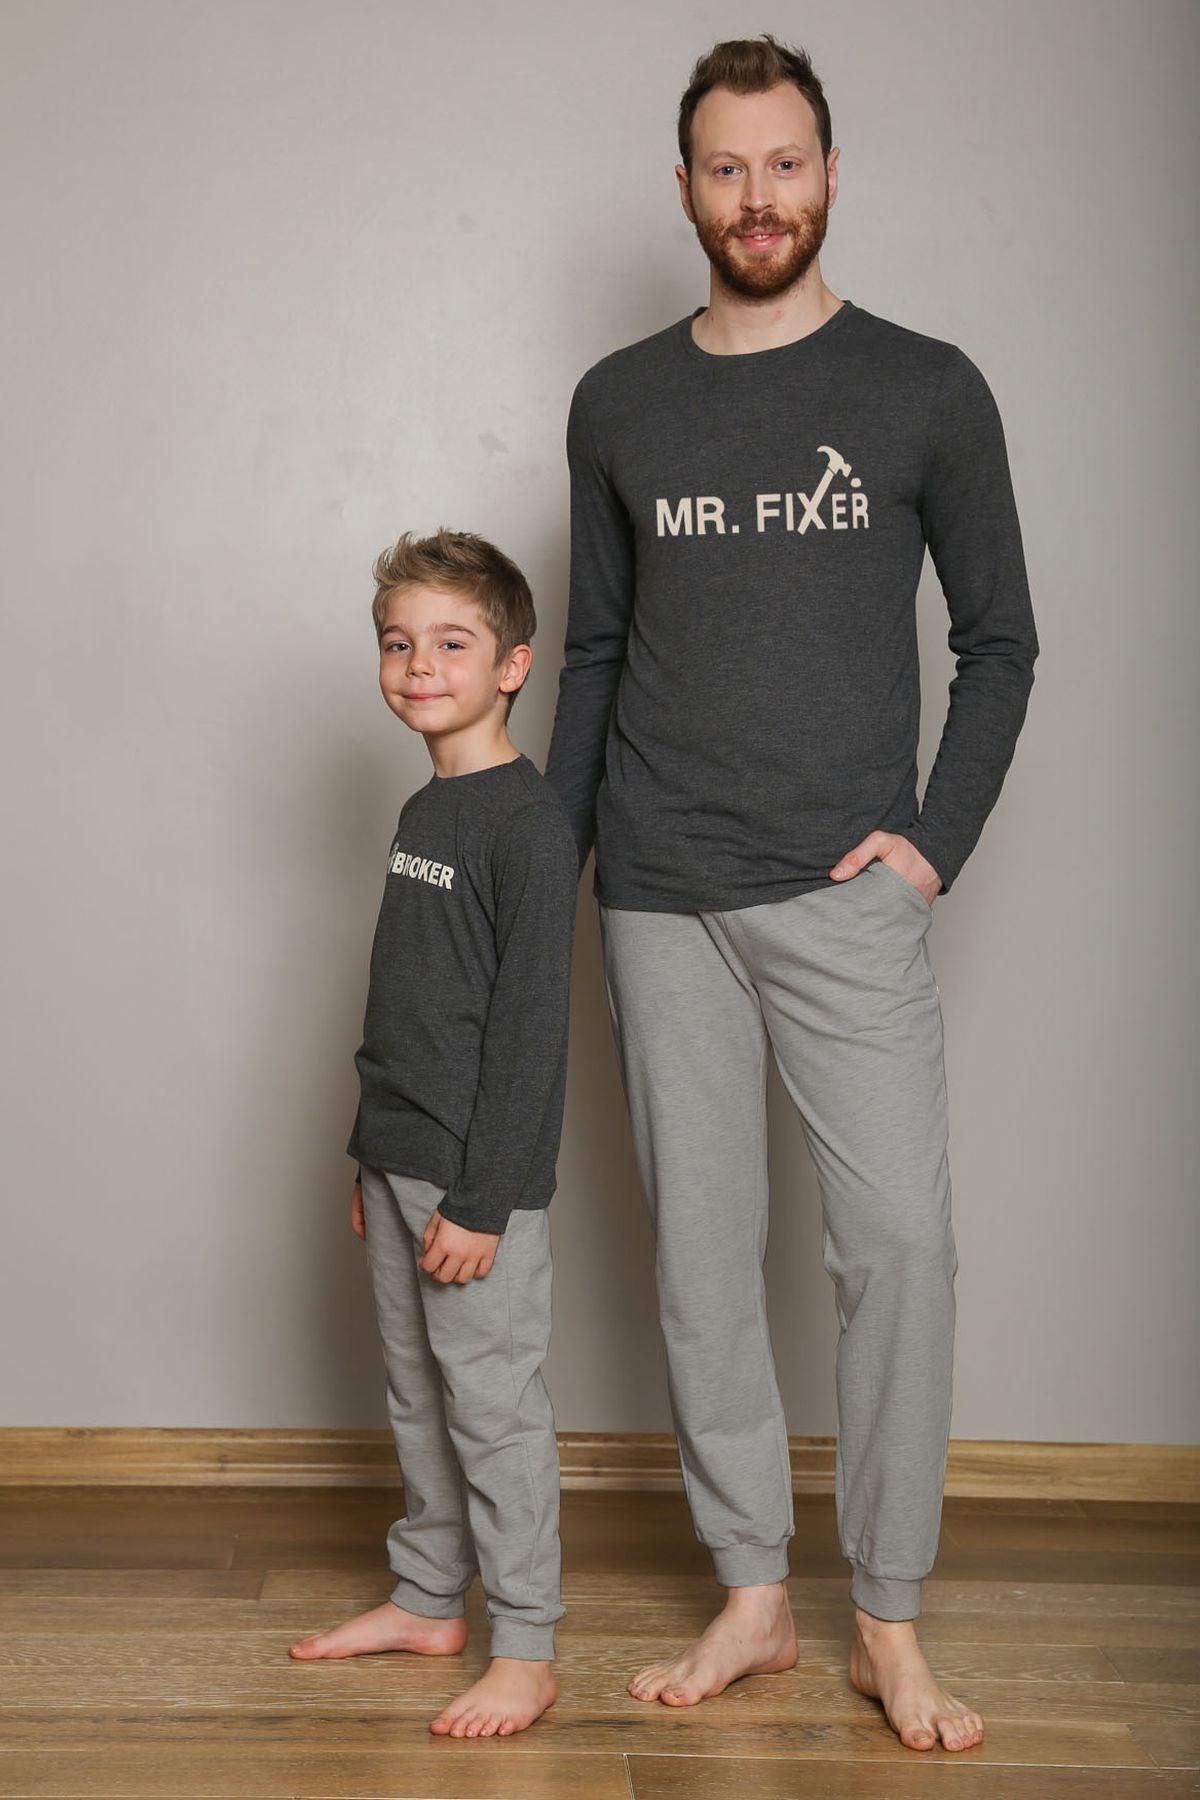 Mr Fixer / Mr Broker Uzun Kol Pijama Takımı.Baba Oğul ayrı satılır